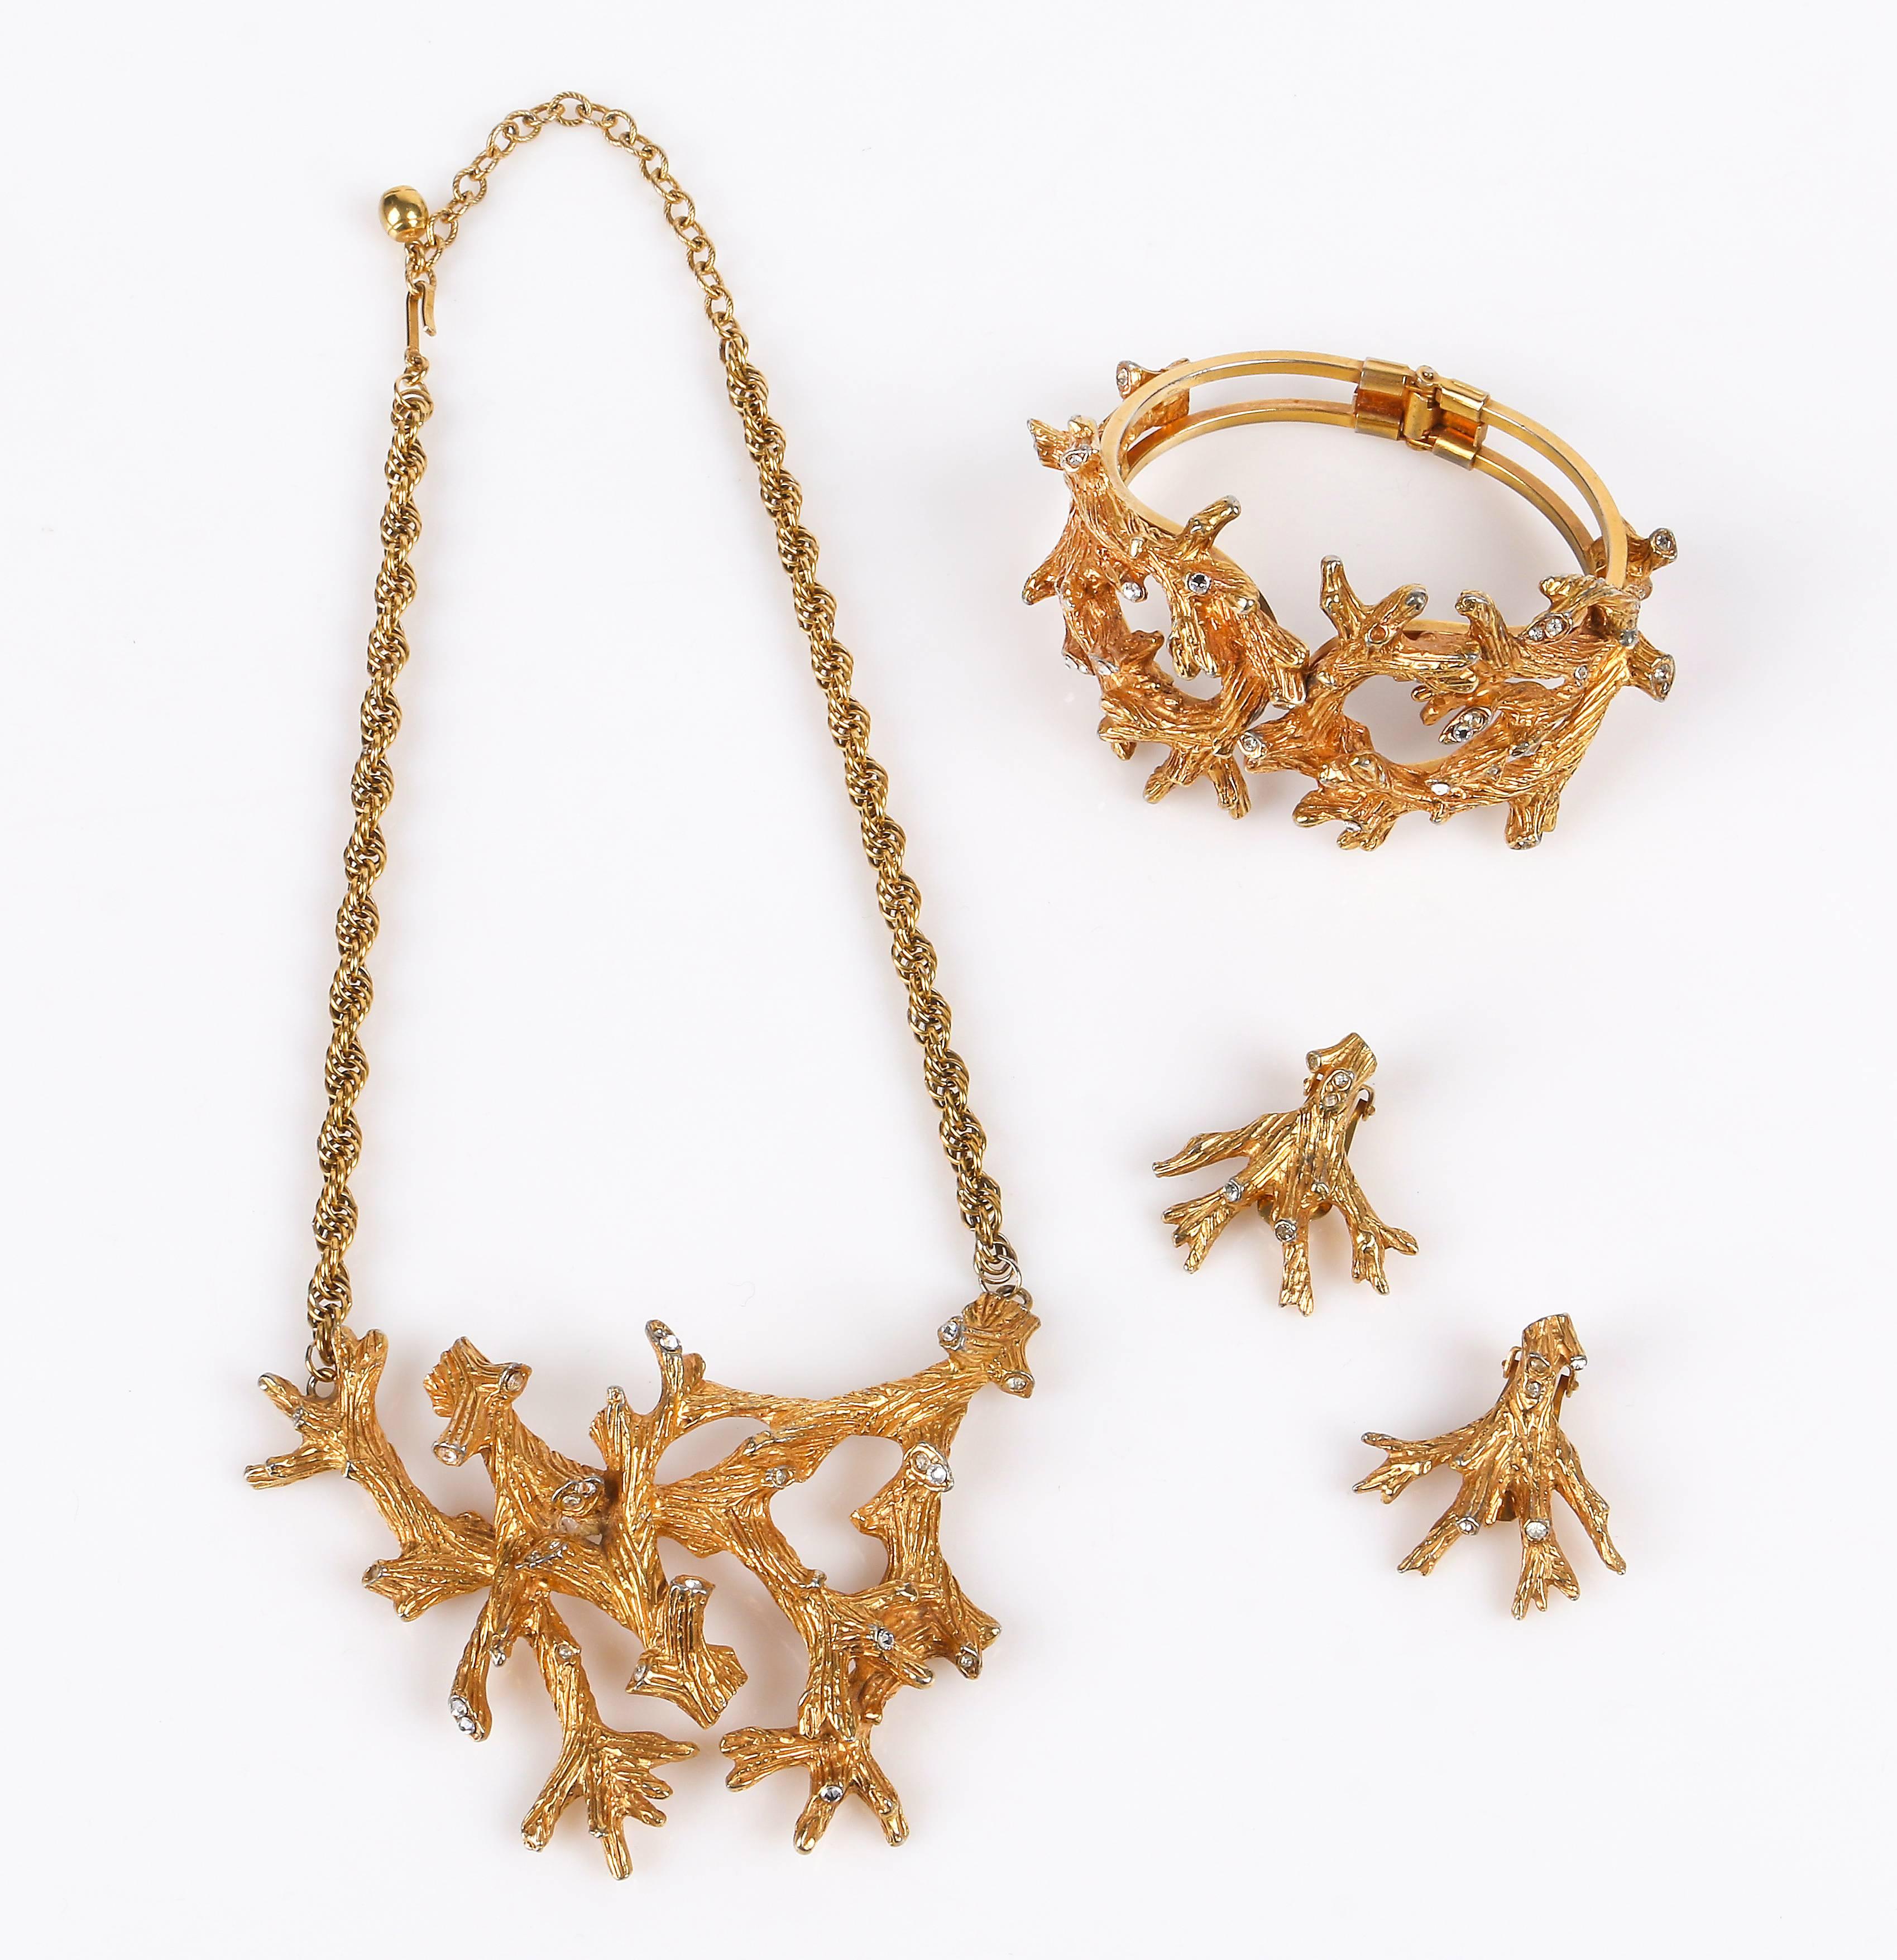 Vintage c.1960's Hattie Carnegie Goldton Baum / Korallen Zweig Strass Armband, Ohrringe und Halskette gesetzt. Gold-Ton beringt Clamper Armband mit strukturierten, geschnitzt Baum / Korallen-Zweige und eingefügt Kristall Strass misst 2